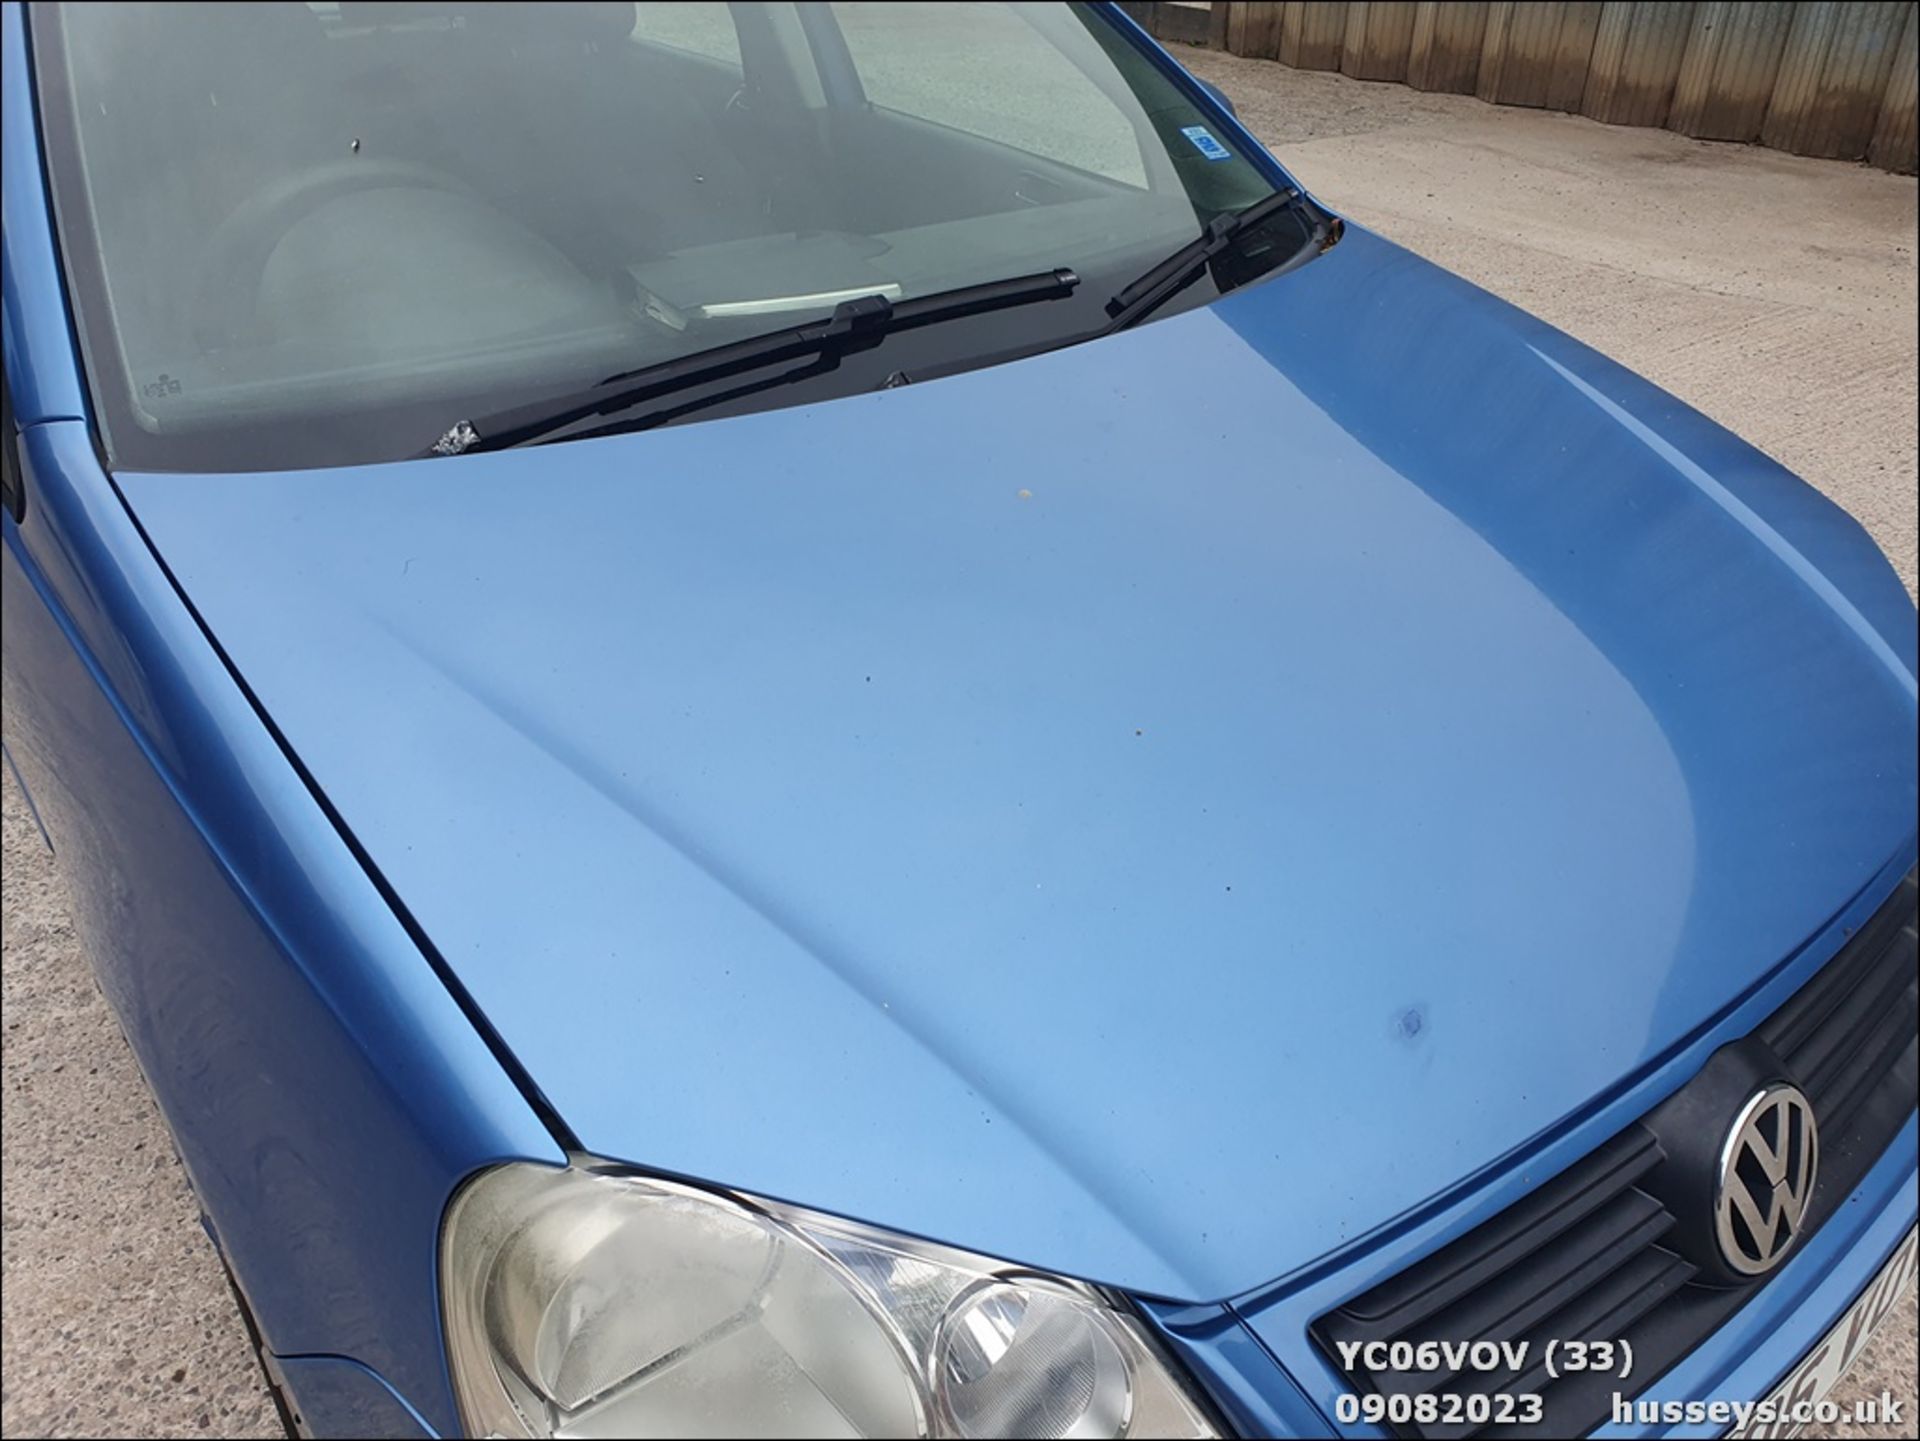 06/06 VOLKSWAGEN POLO SE TDI 80 - 1400cc 5dr Hatchback (Blue, 164k) - Image 34 of 61